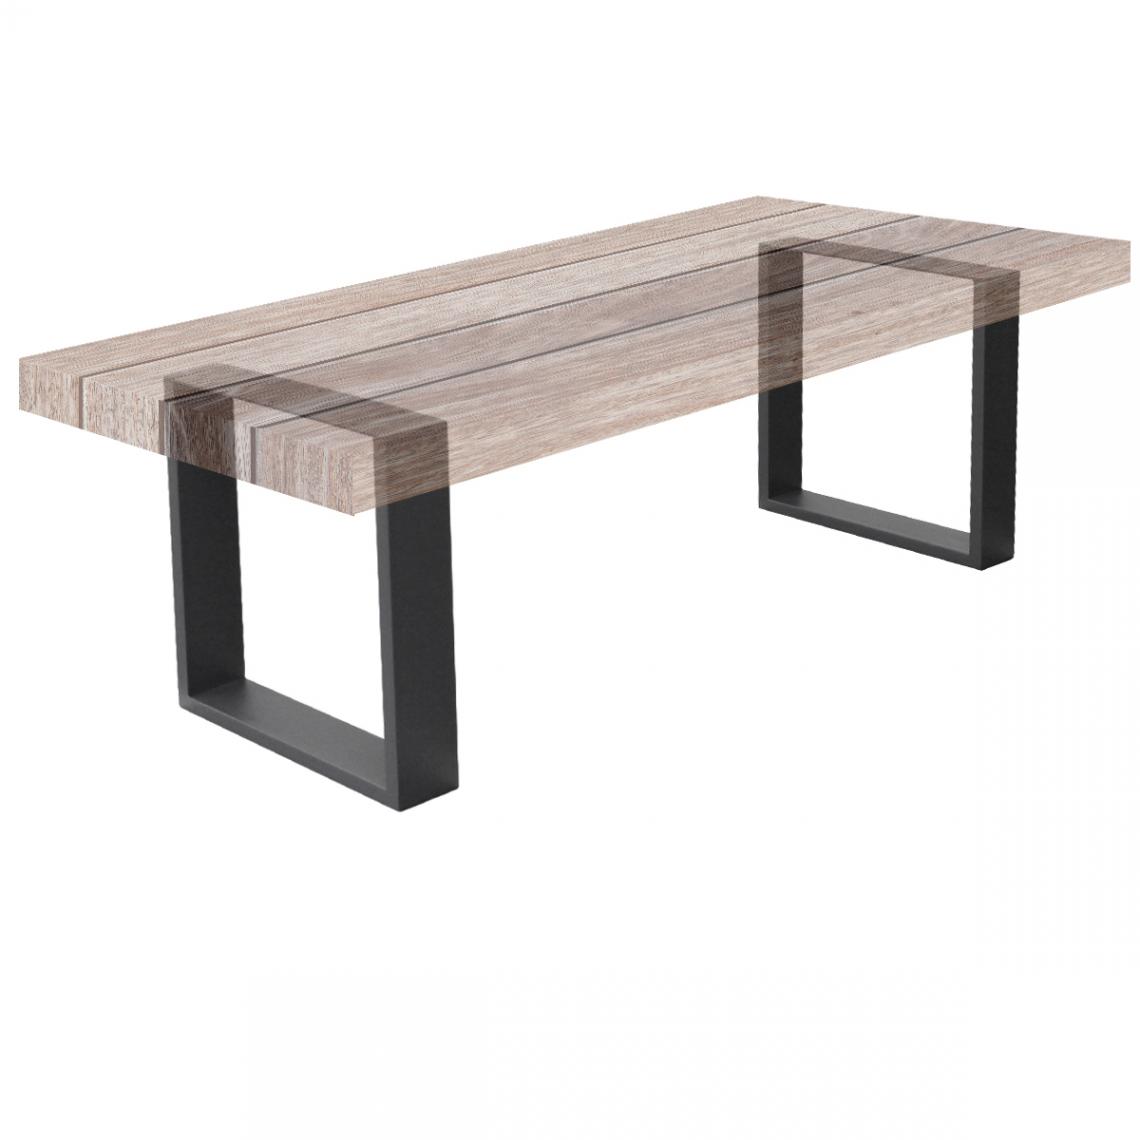 Ecd Germany - Set 2 Pieds de table industriel rectangulaire support banc meuble gris 30x43cm - Pieds & roulettes pour meuble